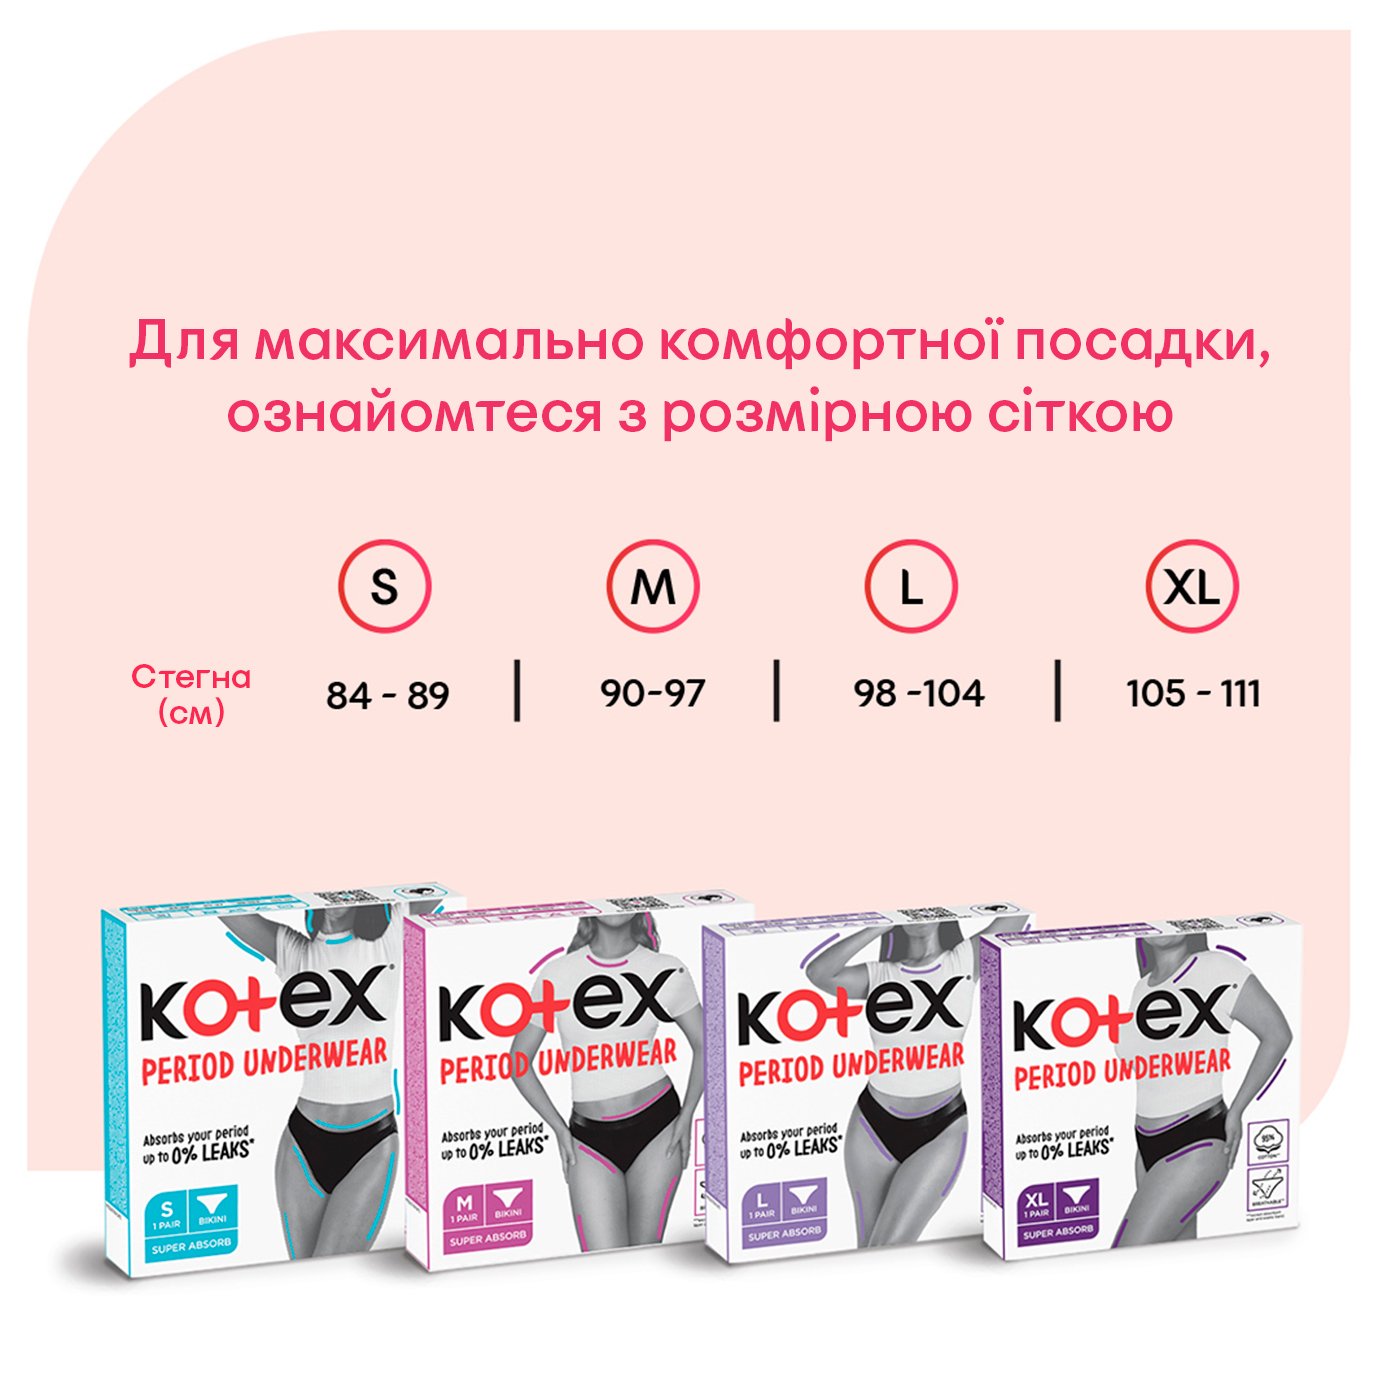 Менструальное белье Kotex размер M 1 шт. - фото 7